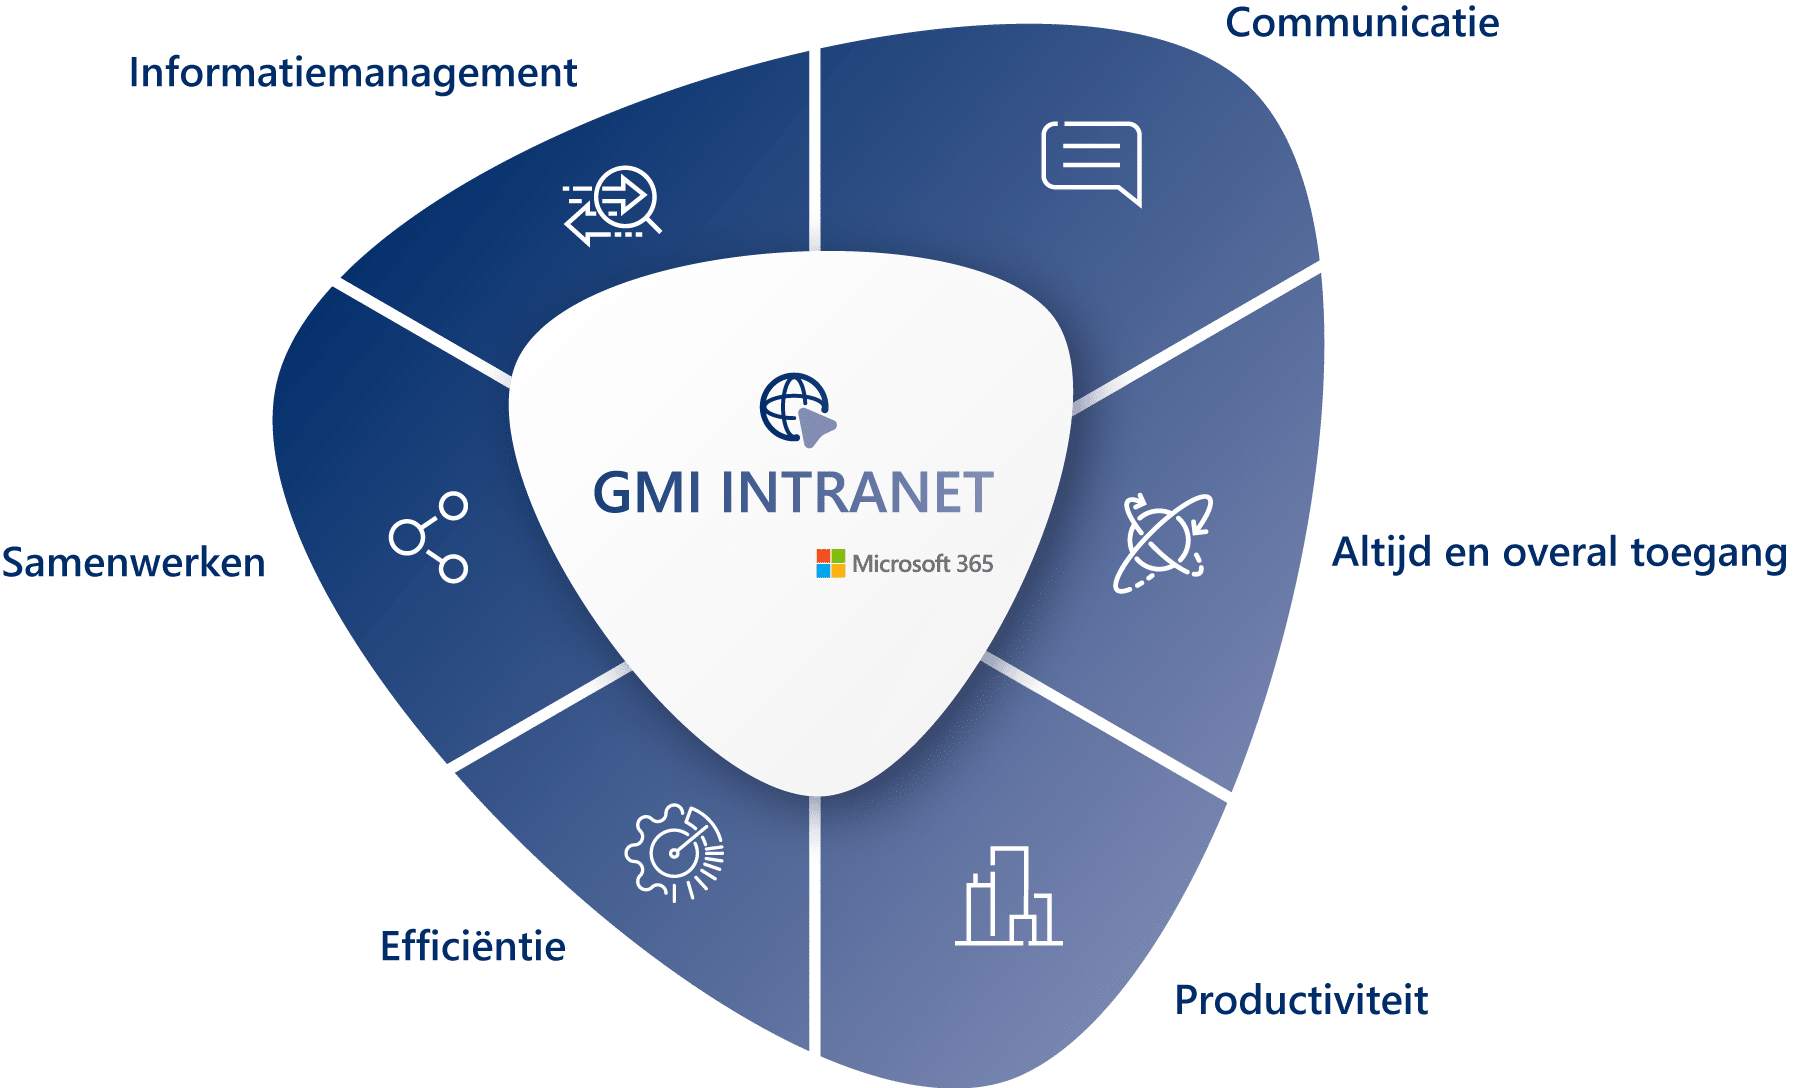 GMI intranet als digitaal communicatieplatform